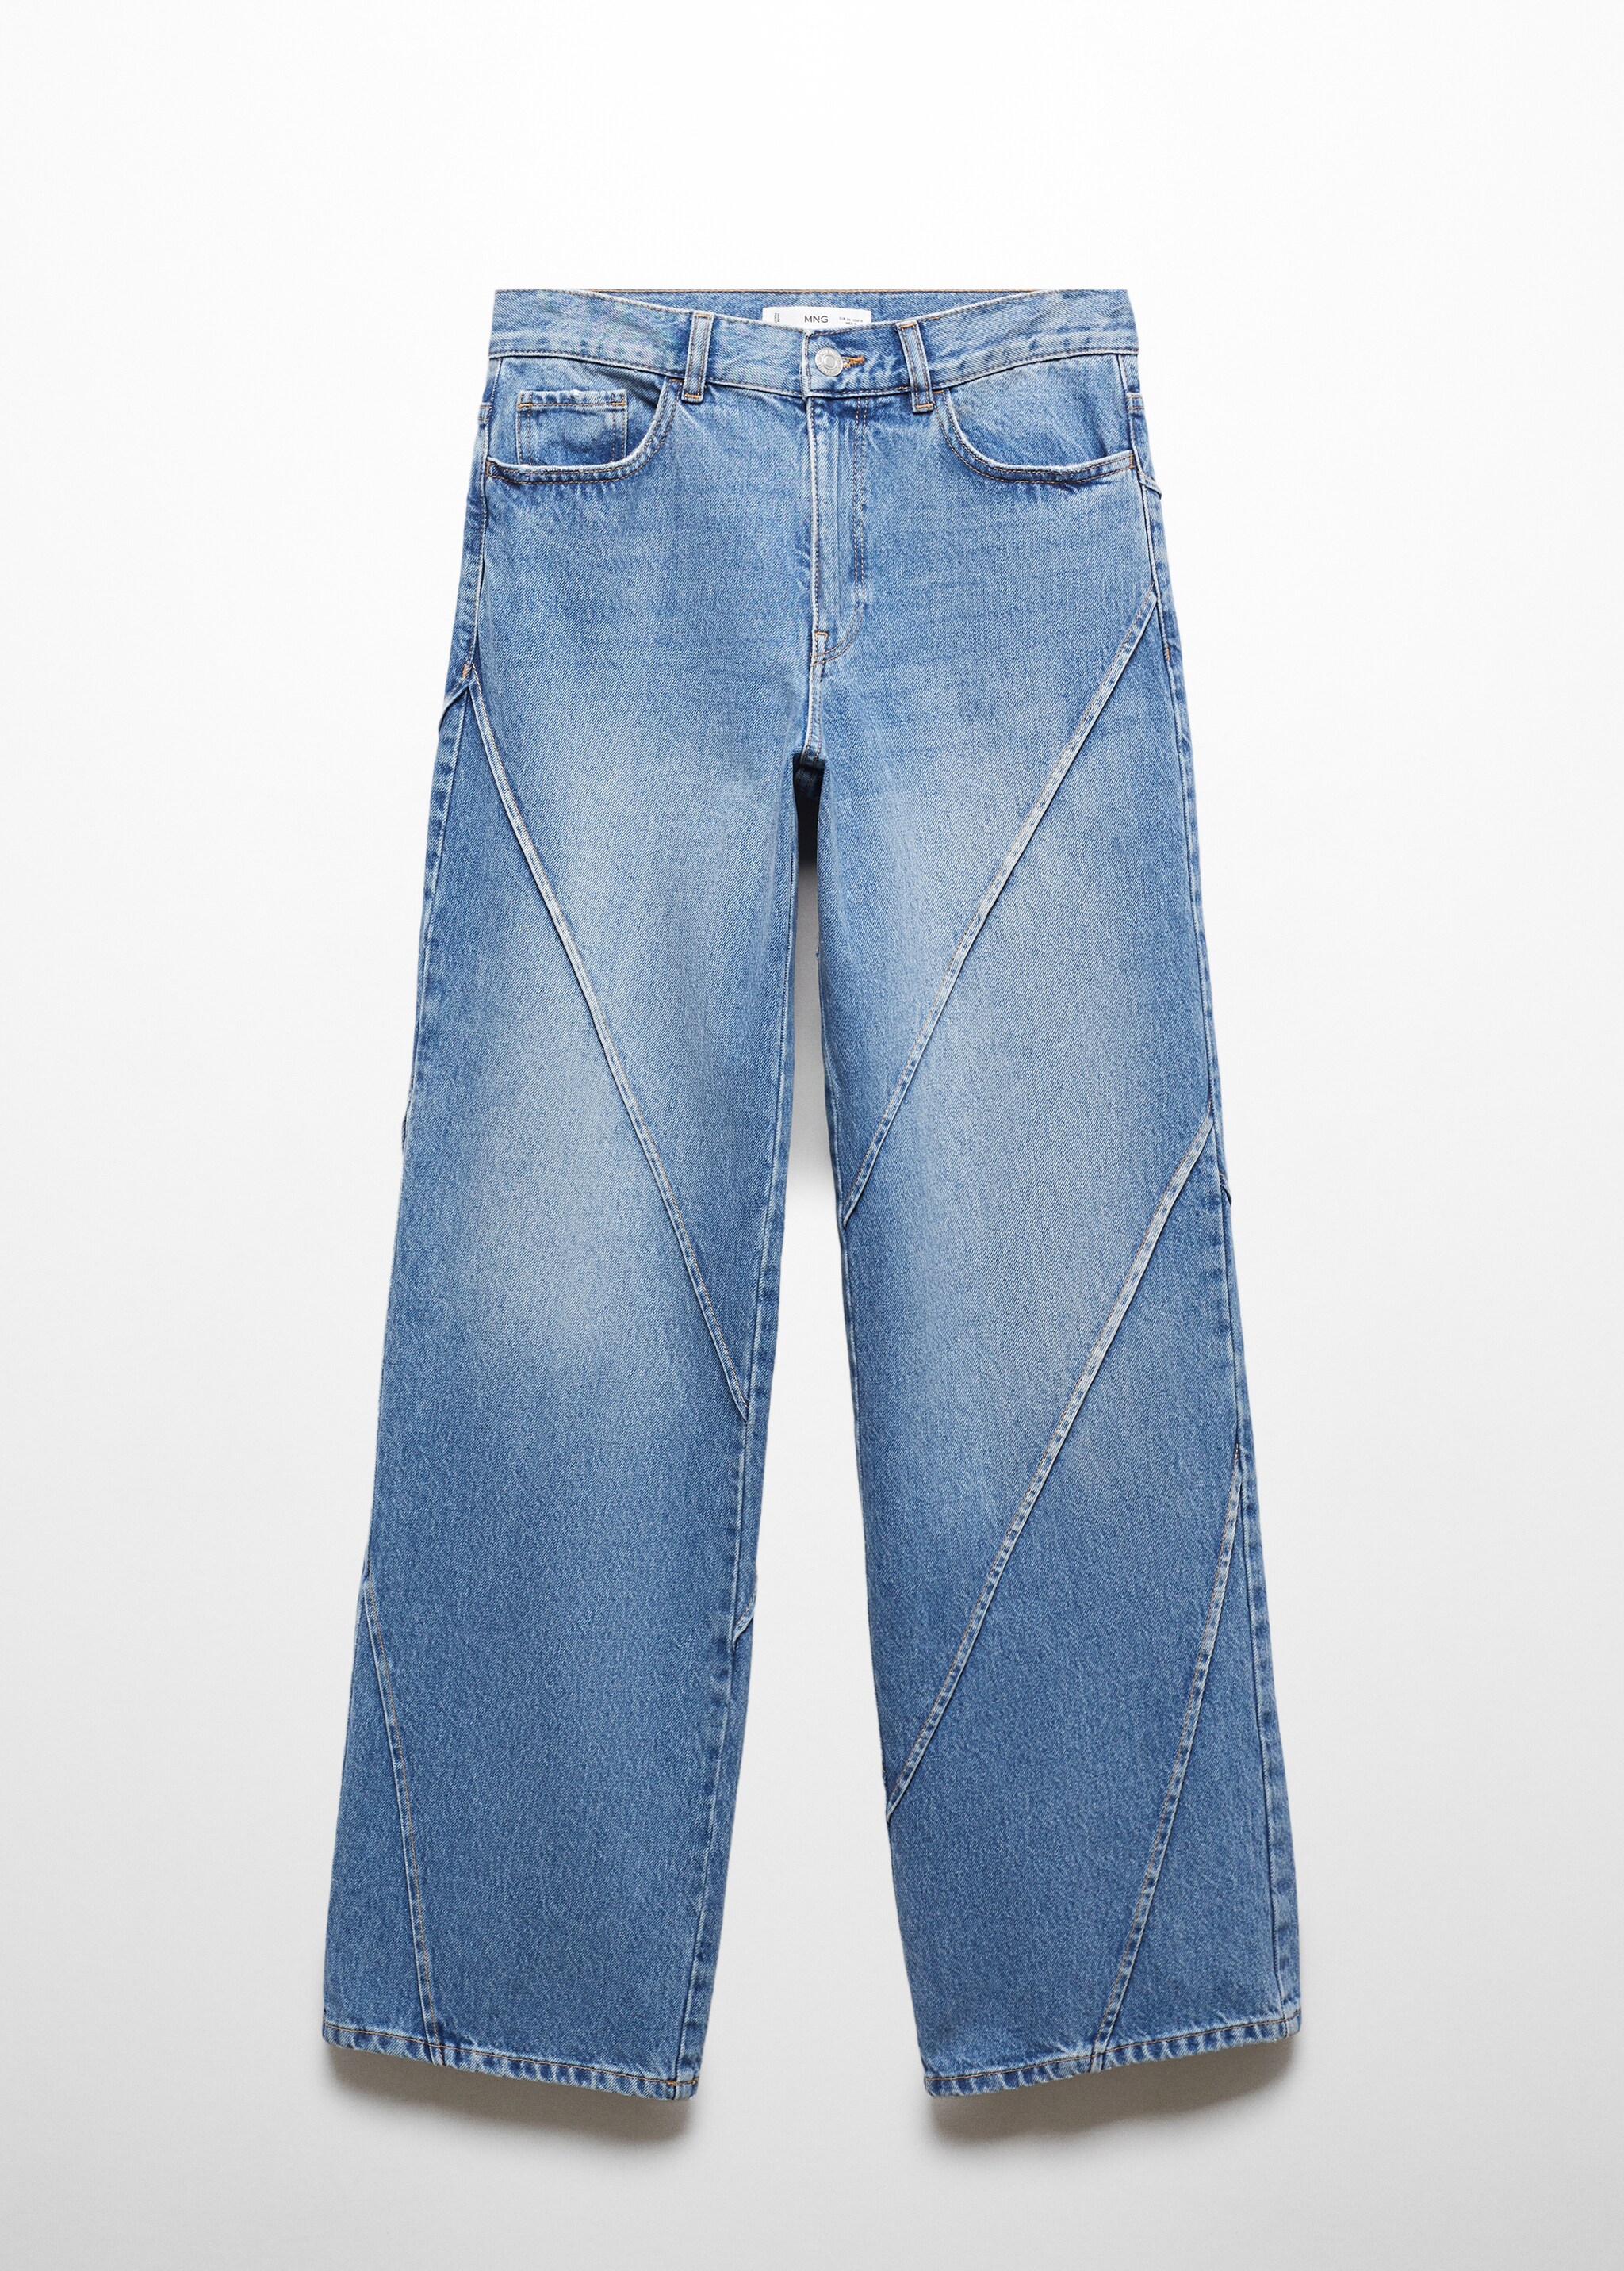 Jeans wideleg costuras decorativas - Artículo sin modelo